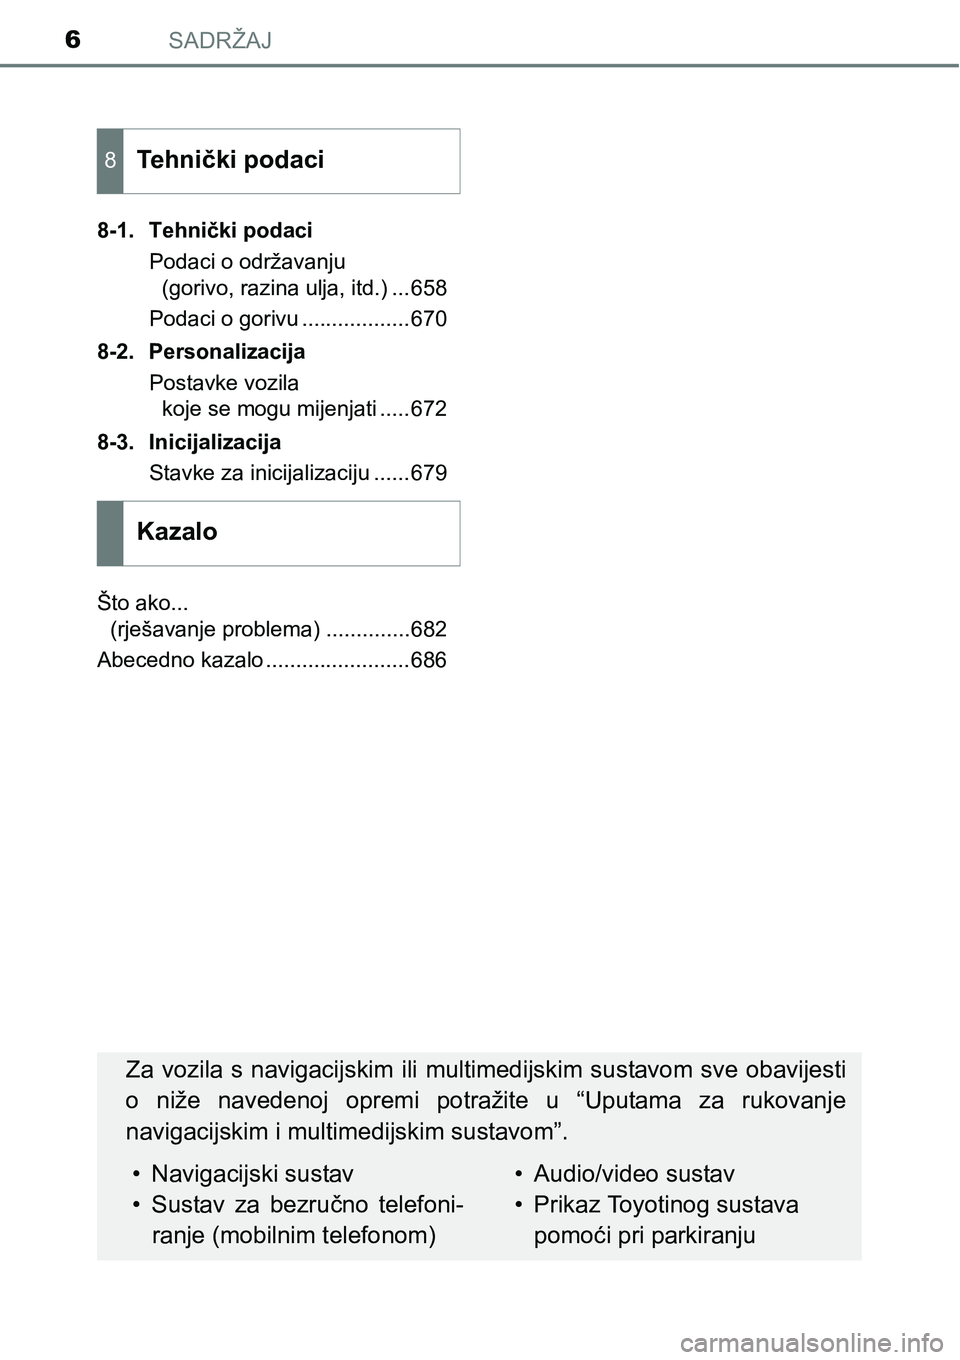 TOYOTA PRIUS 2015  Upute Za Rukovanje (in Croatian) SADRŽAJ6
8-1. Tehnički podaci
Podaci o održavanju 
(gorivo, razina ulja, itd.) ...658
Podaci o gorivu ..................670
8-2. Personalizacija
Postavke vozila 
koje se mogu mijenjati .....672
8-3